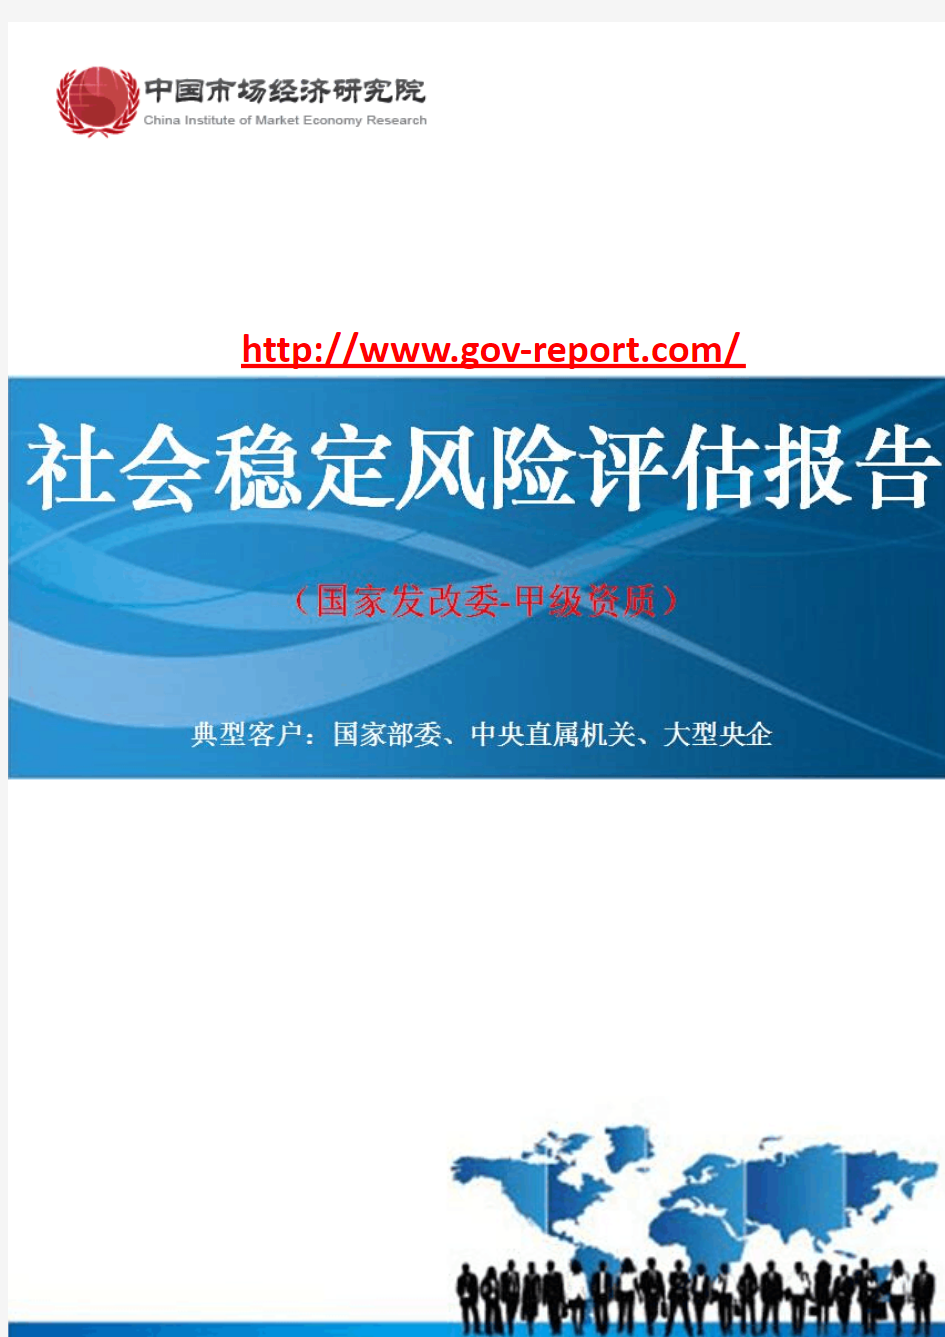 水库扩建工程灌区项目社会稳定风险评估报告(中国市场经济研究院-工程咨询-甲级资质)